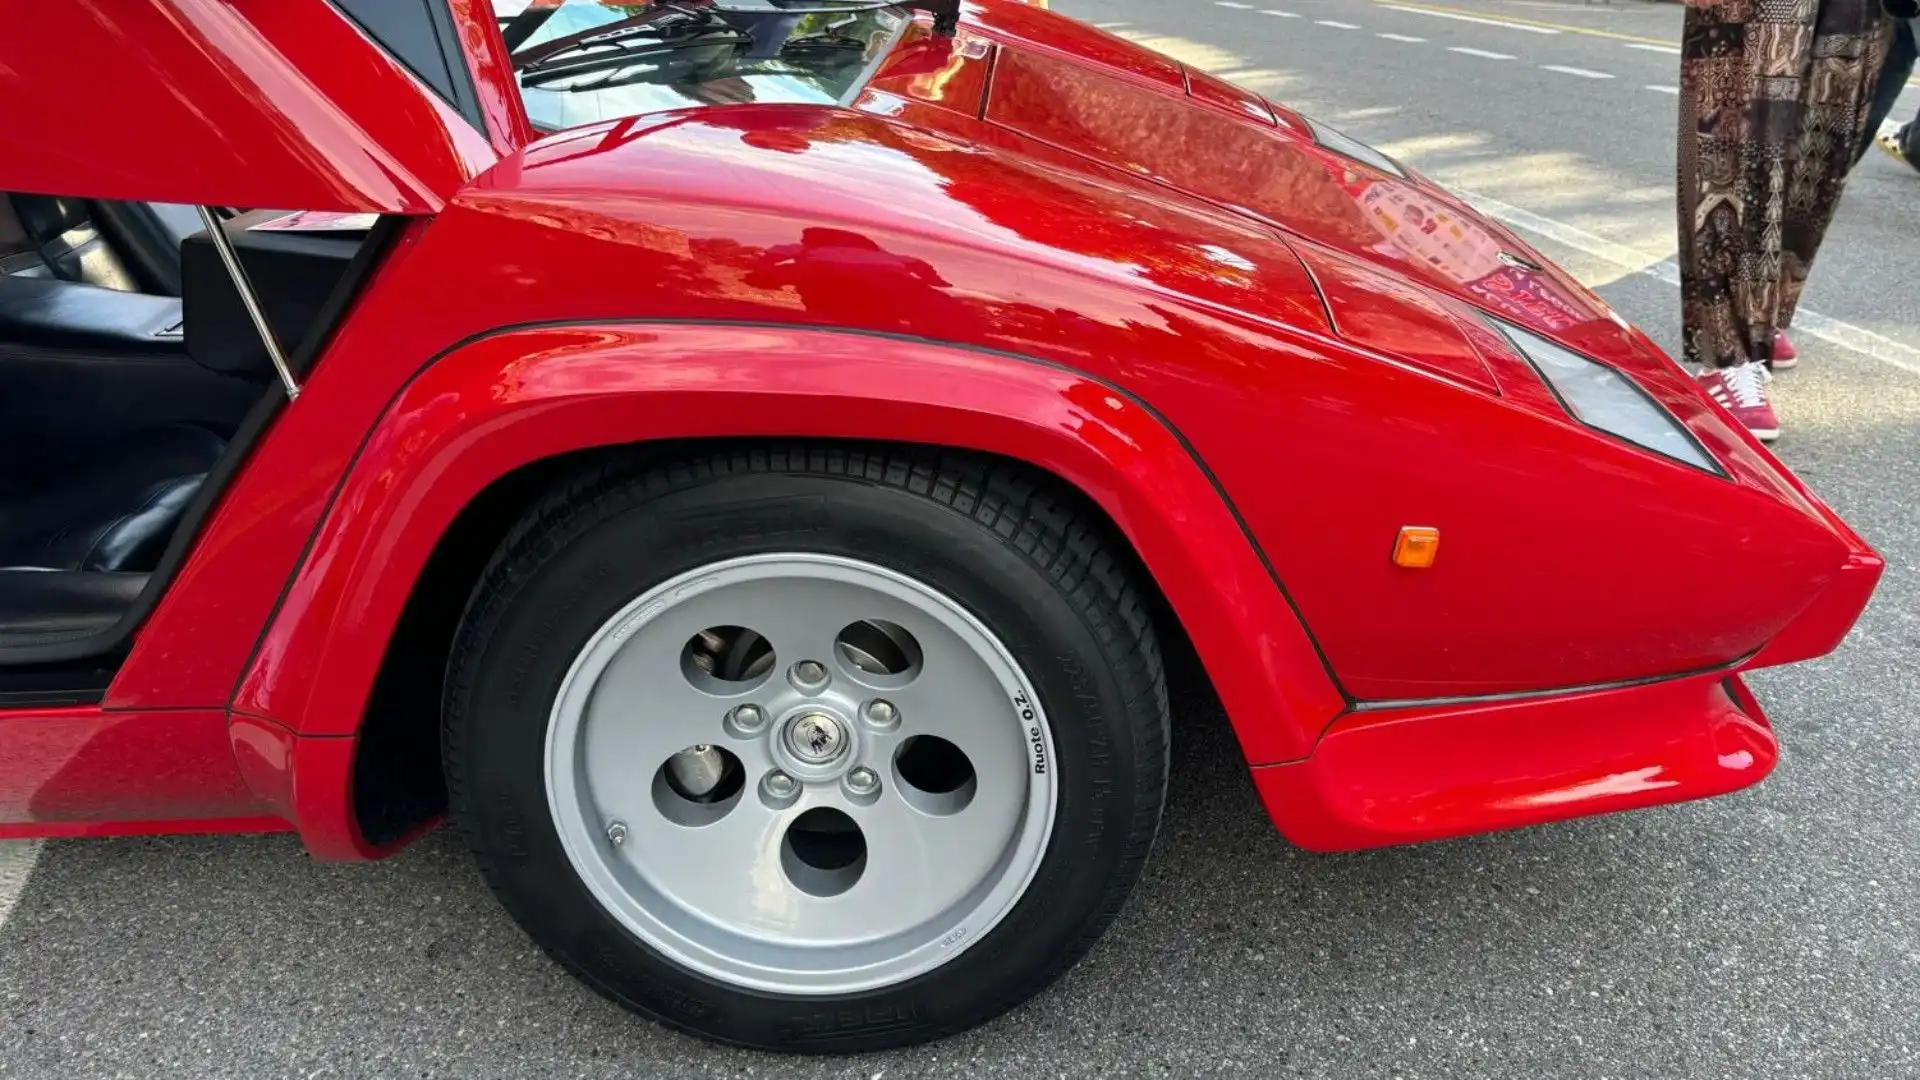 La Countach ha contribuito a salvare Lamborghini dalla bancarotta nel 1980, imponendo nel mondo la sport-car italiana con la sua forma a cuneo